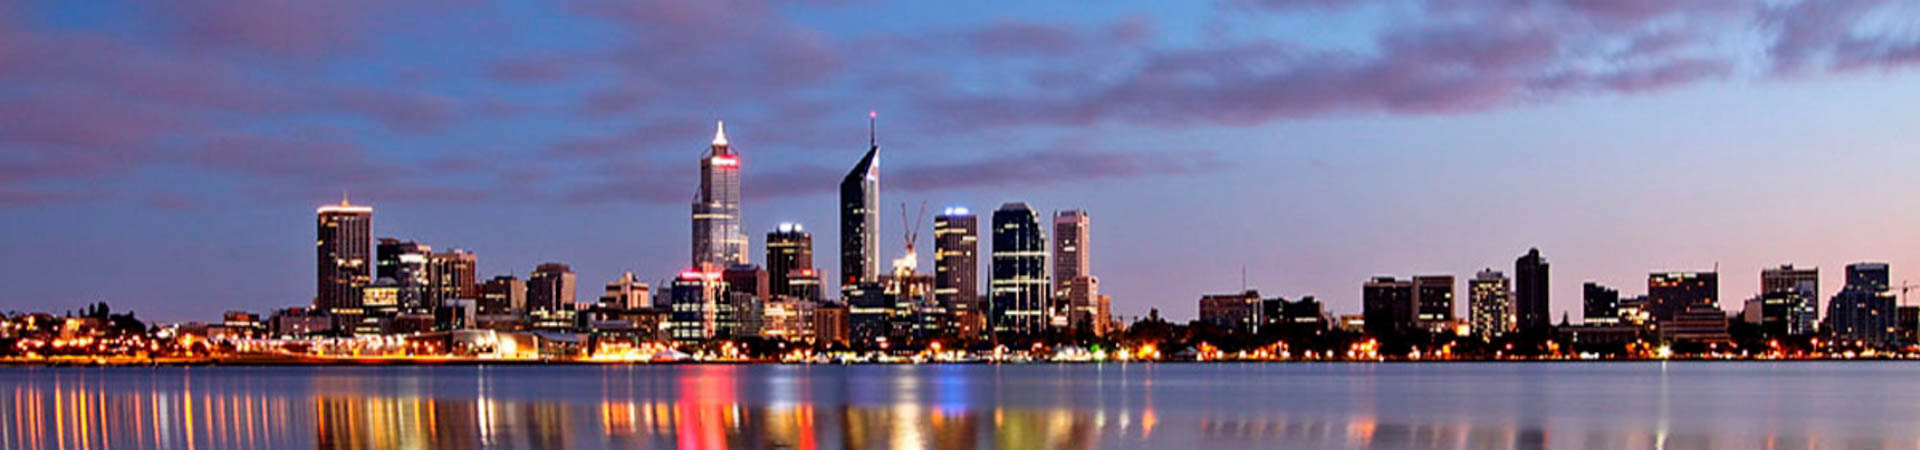 Perth (Fremantle), Australia